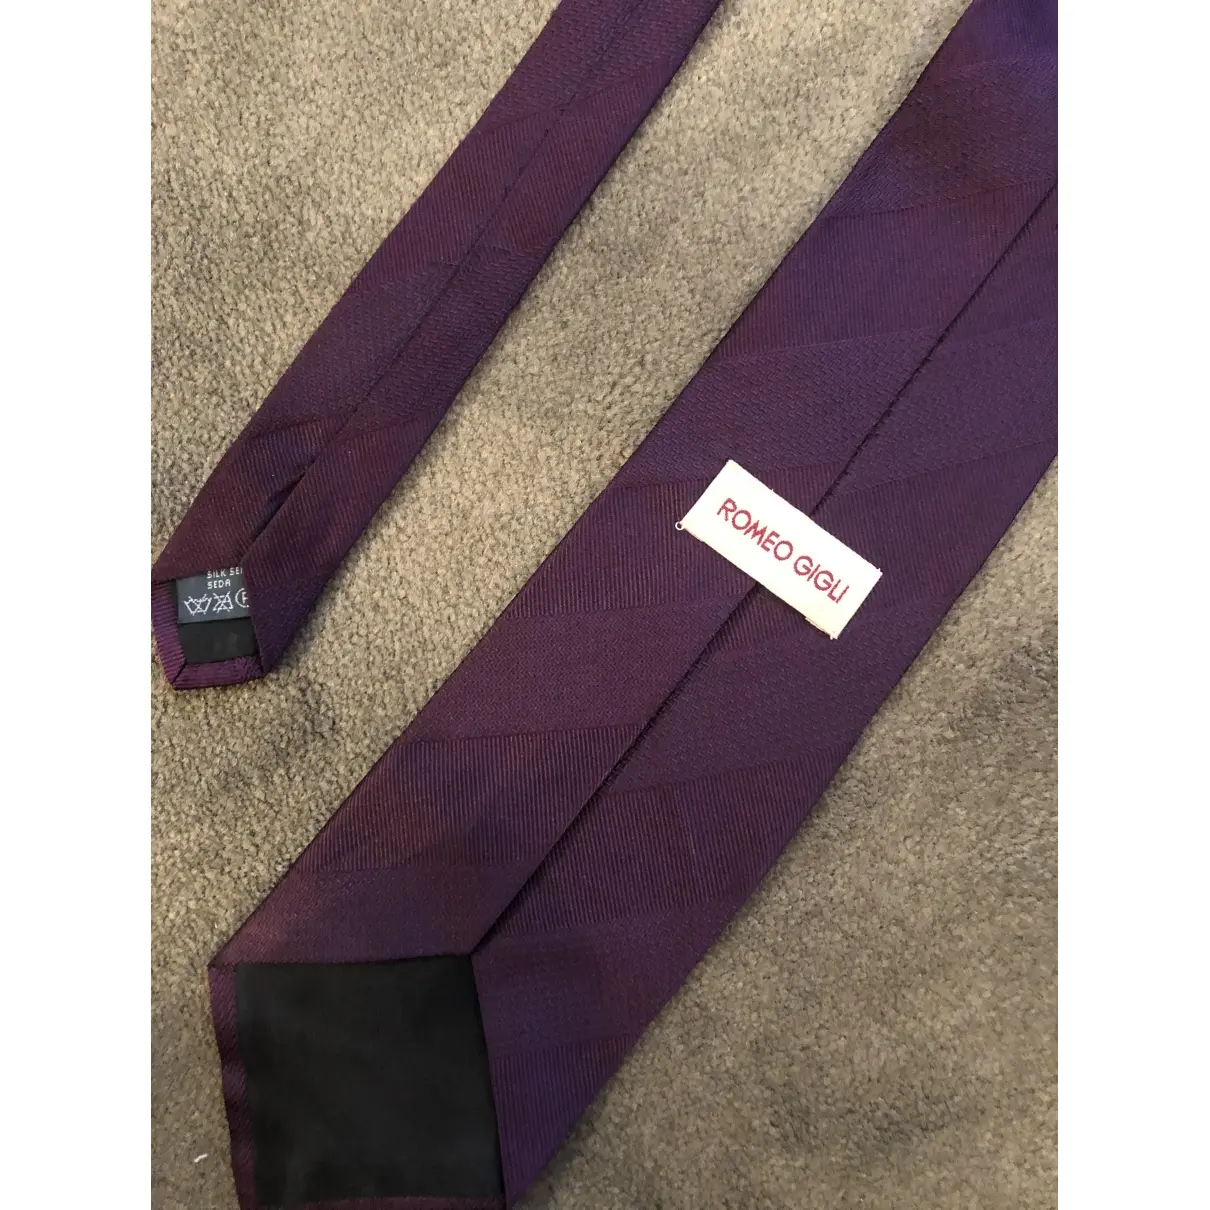 Buy Romeo Gigli Silk tie online - Vintage